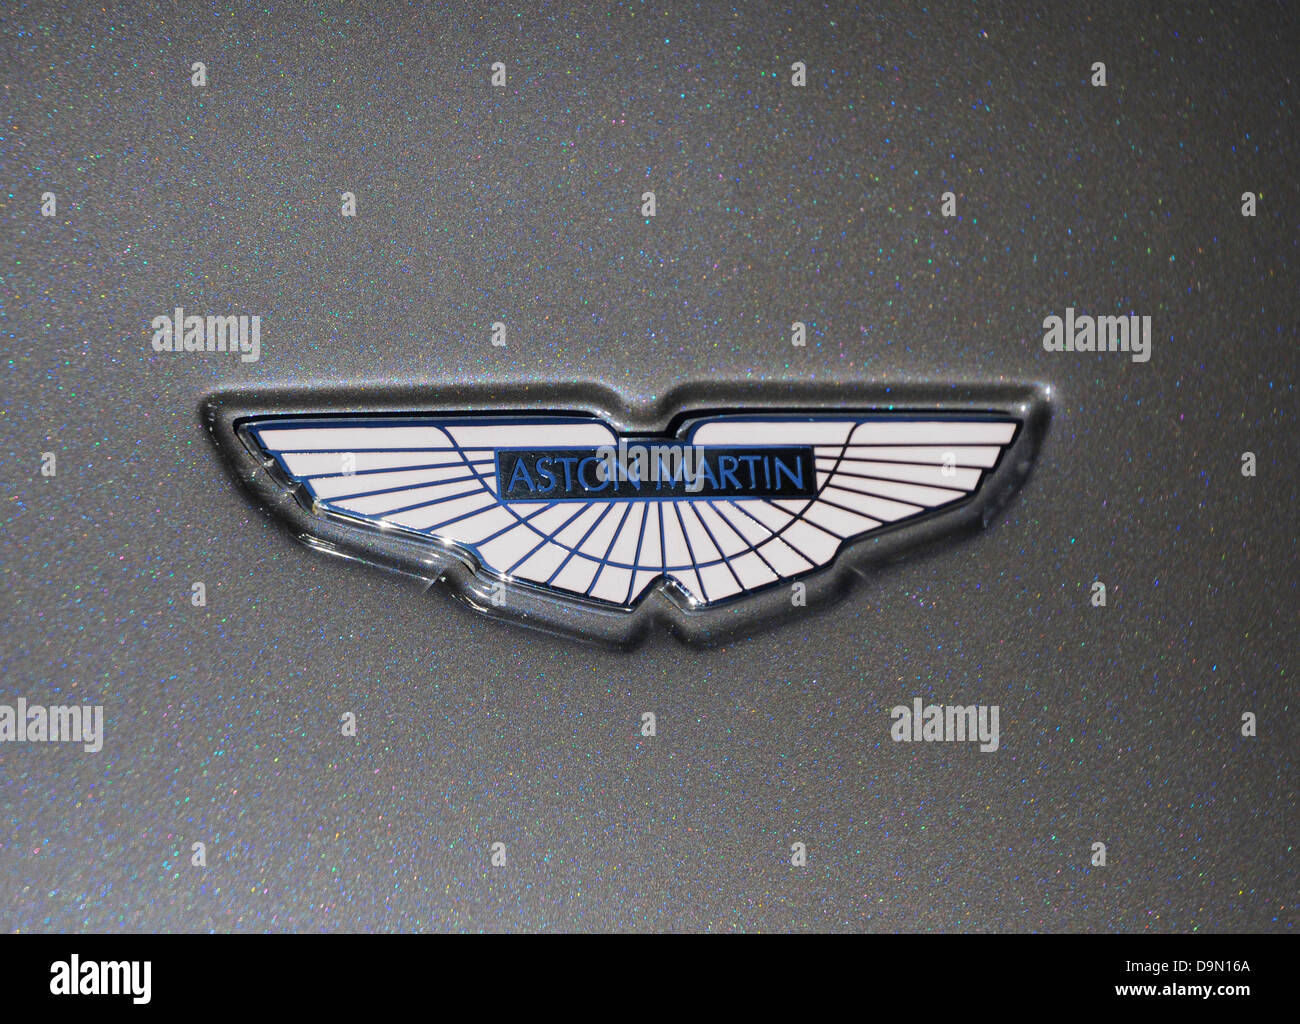 Aston Martin car emblem Stock Photo